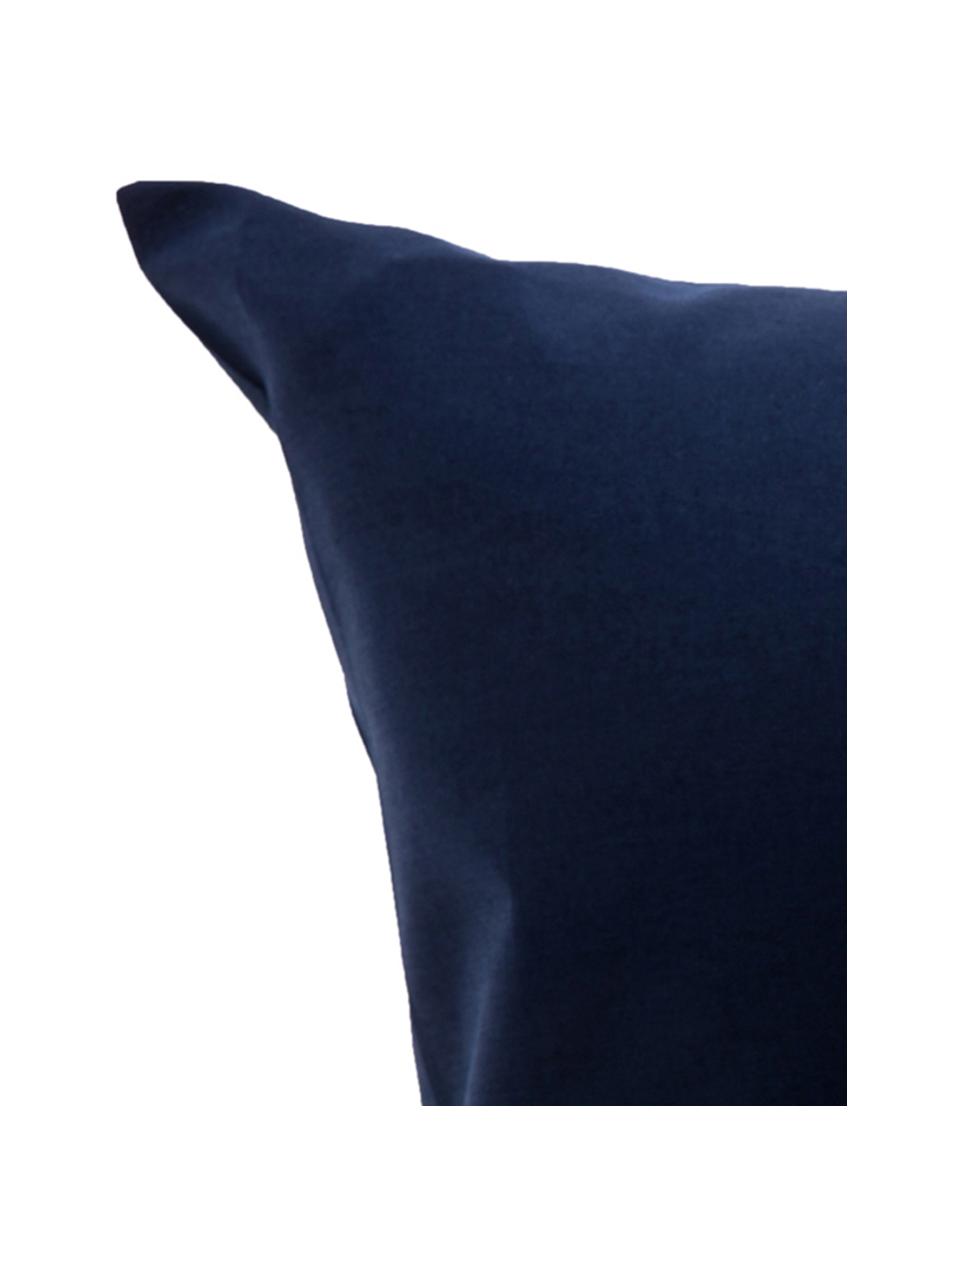 Set lenzuola blu scuro in cotone ranforce Lenare, Fronte e retro: blu scuro, 150 x 290 cm + 1 federa 50 x 80 cm